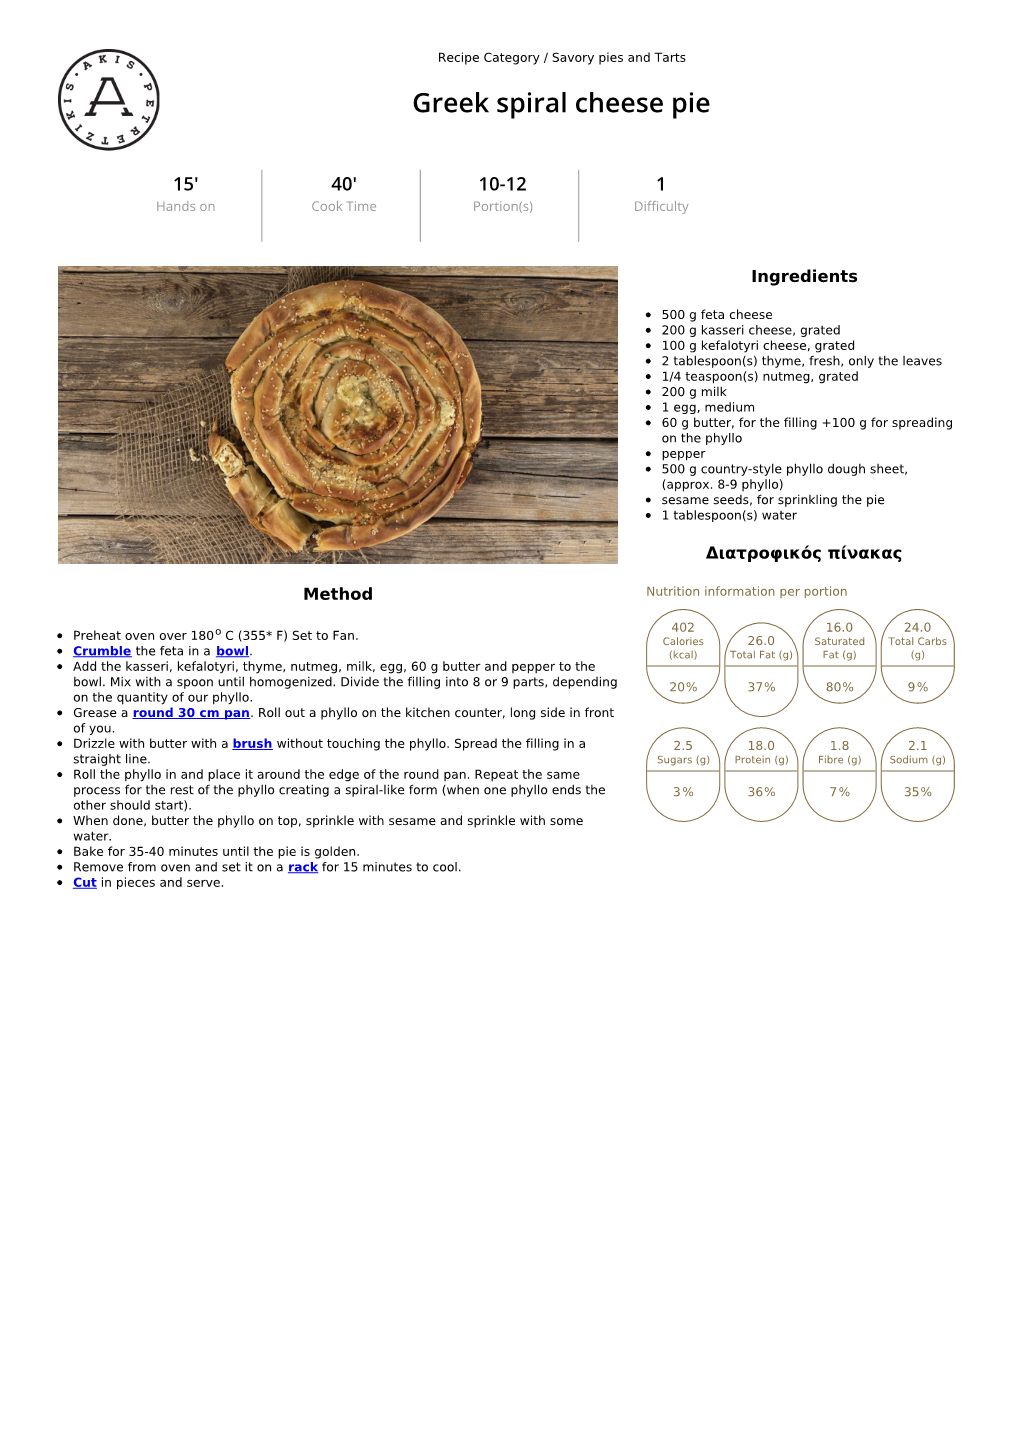 Greek Spiral Cheese Pie